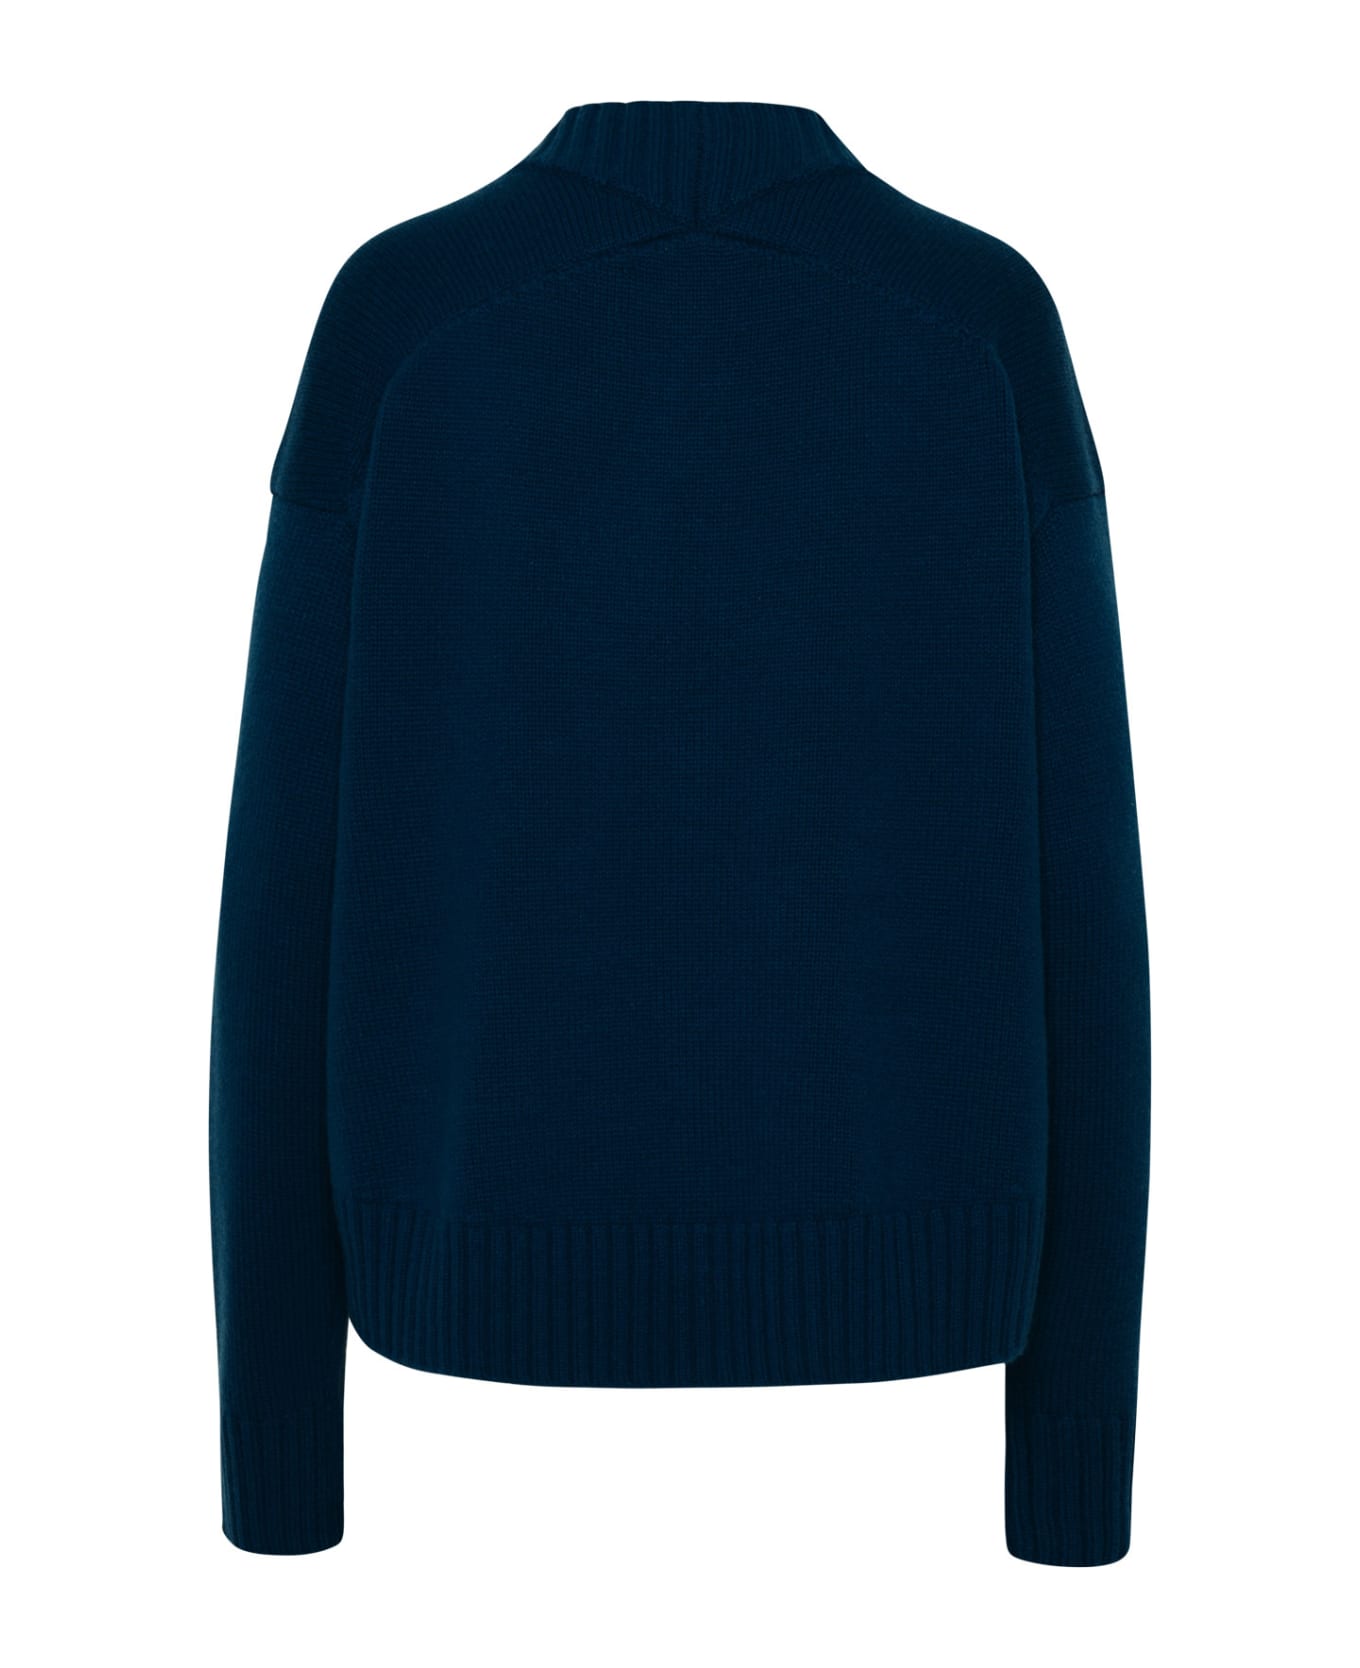 Jil Sander Sweater In Blue Cashmere Blend - Blue ニットウェア